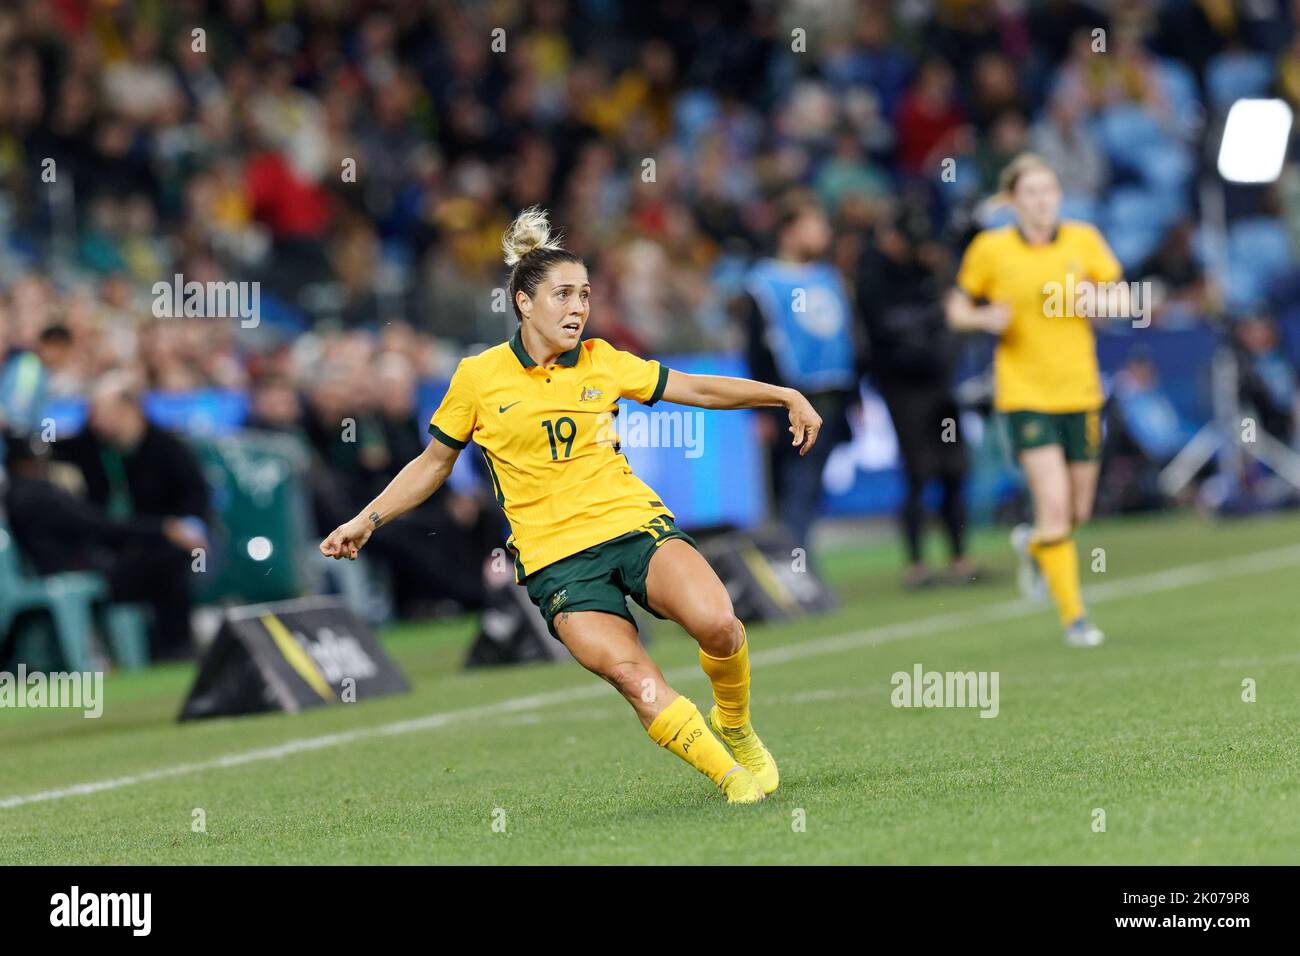 SYDNEY, AUSTRALIA - SETTEMBRE 6: Katrina Gorry of Australia calcia la palla durante l'International friendly Match tra Australia e Canada Foto Stock